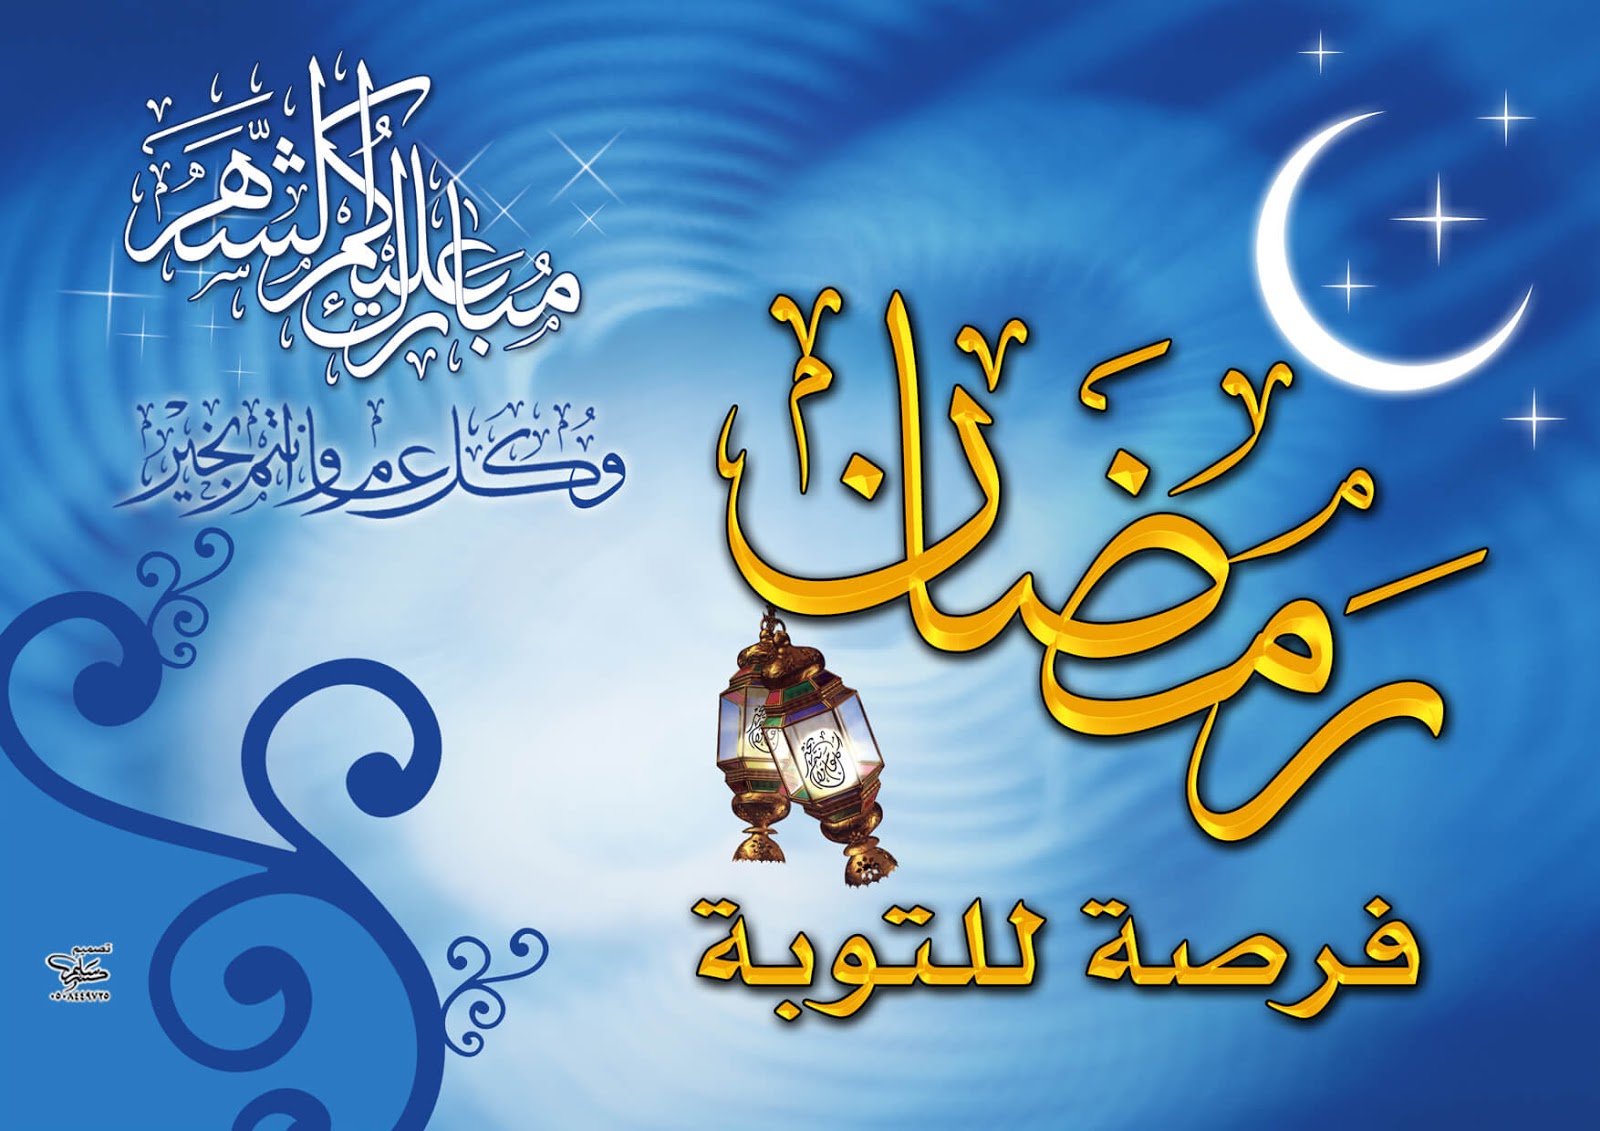 Kaligrafi Dan Desain Grafik Terkait Ramadhan Seni Kaligrafi Islam